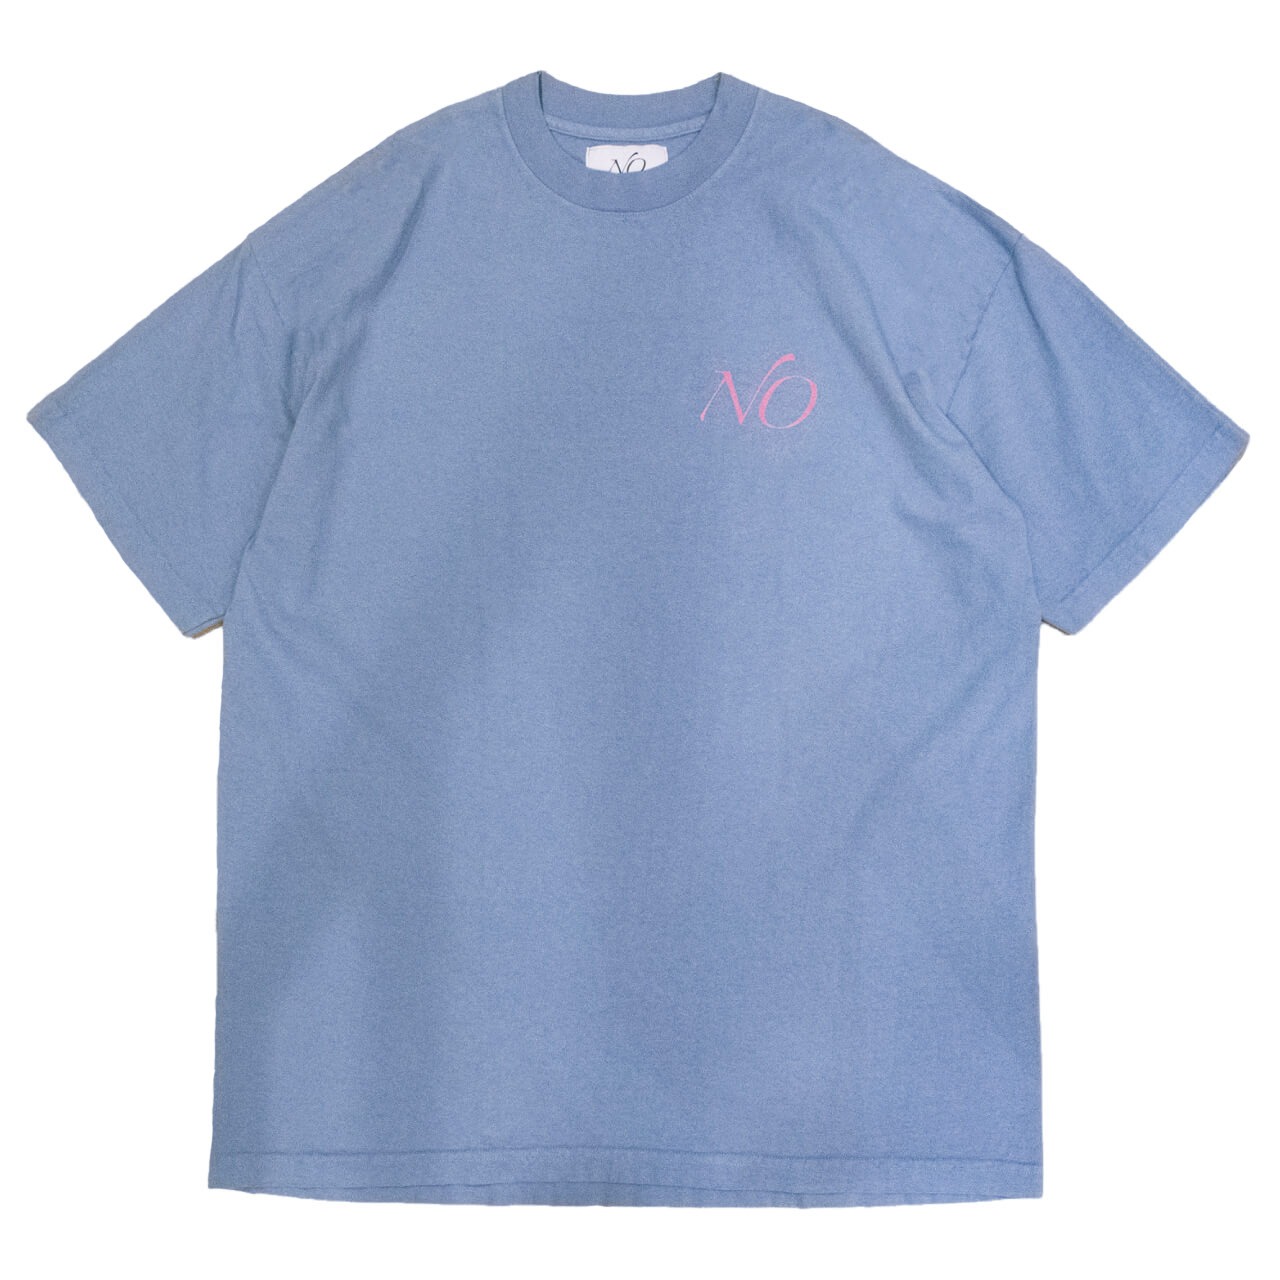 NO Logo Tee shirts - Blue